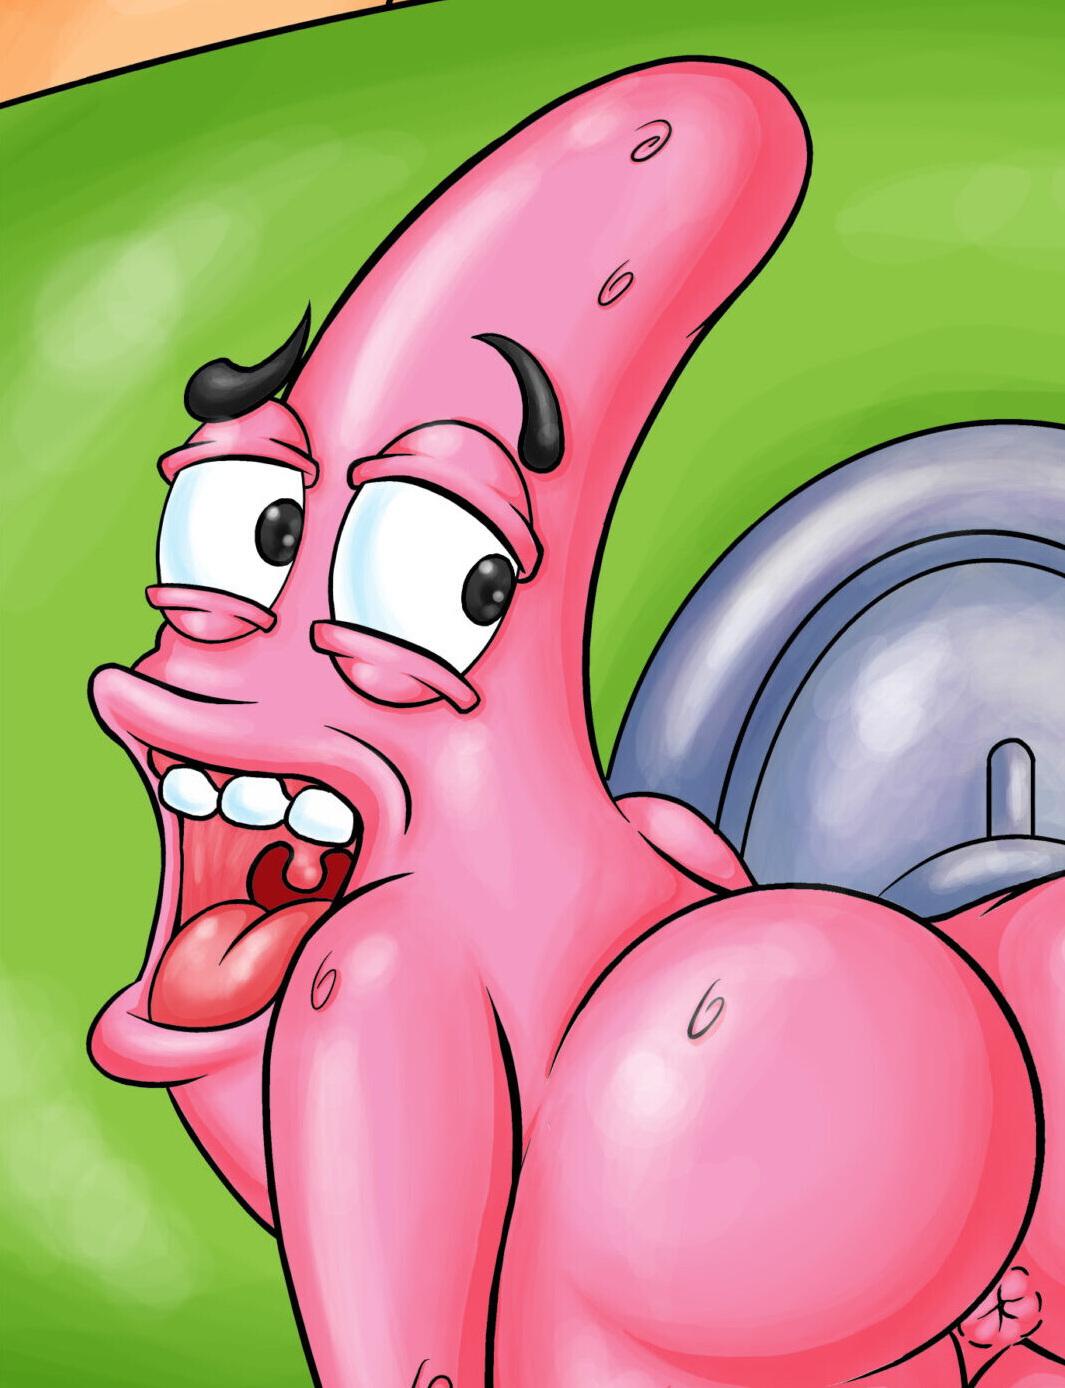 Spongebob Gay Porn Big Ass - Just Cartoon Dicks - Fun blog about gay cartoon and gay comics!